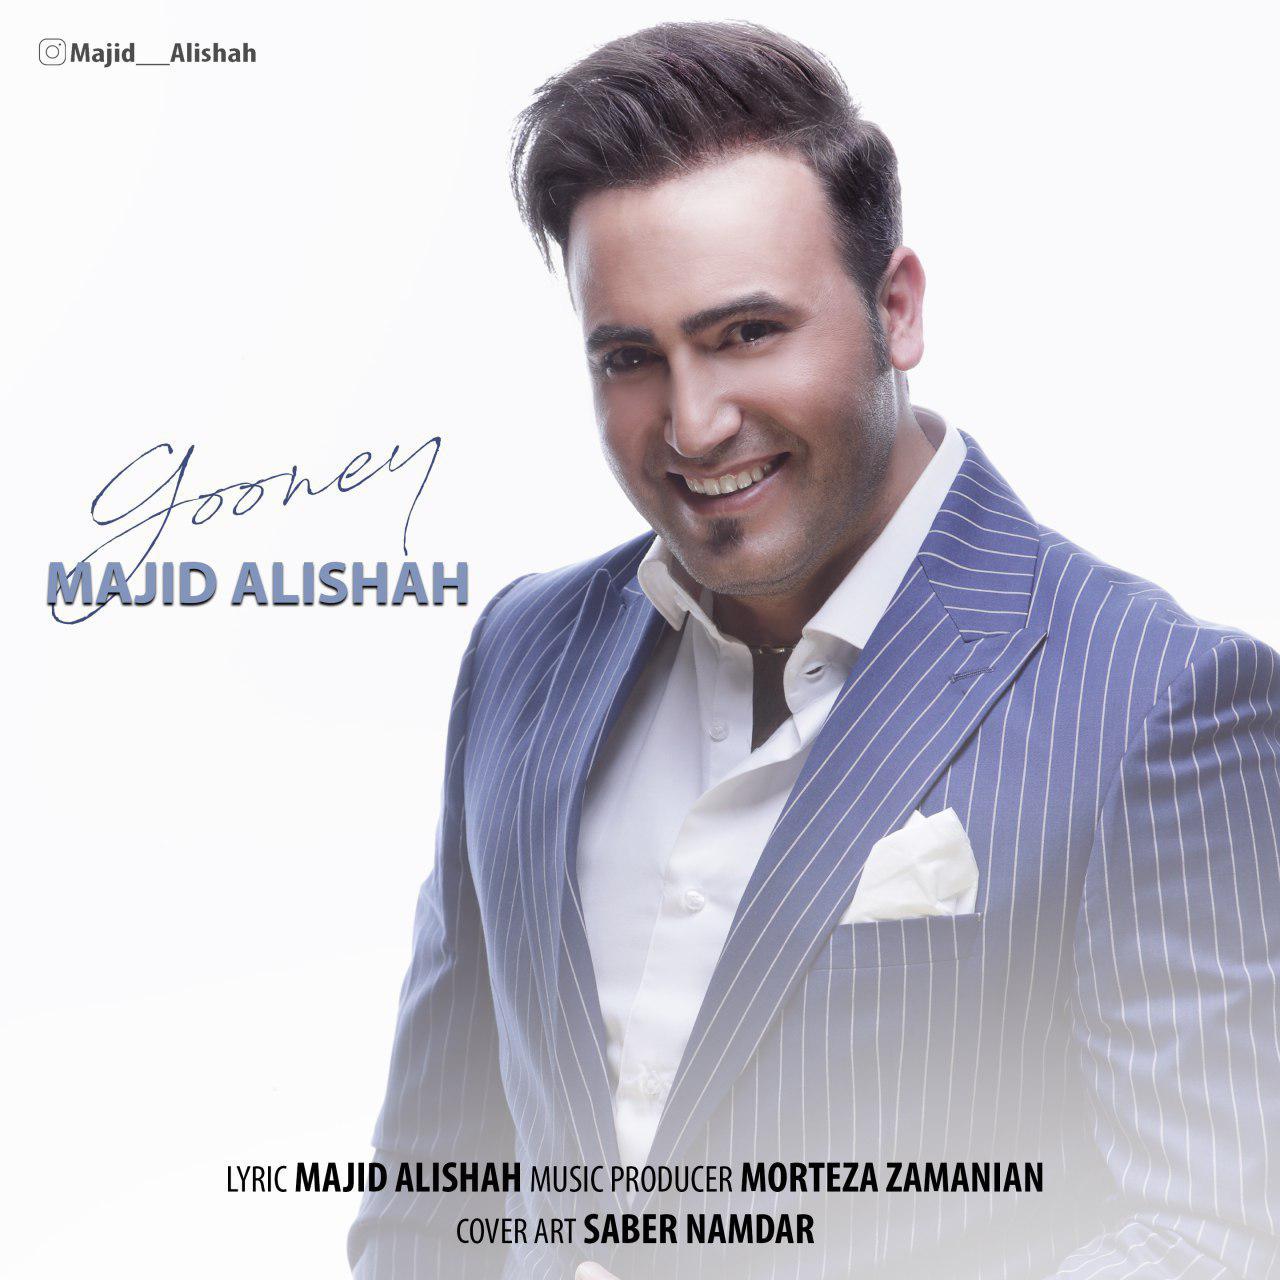  دانلود آهنگ جدید مجید علیشاه - گونه ای | Download New Music By Majid Alishah - Gooney